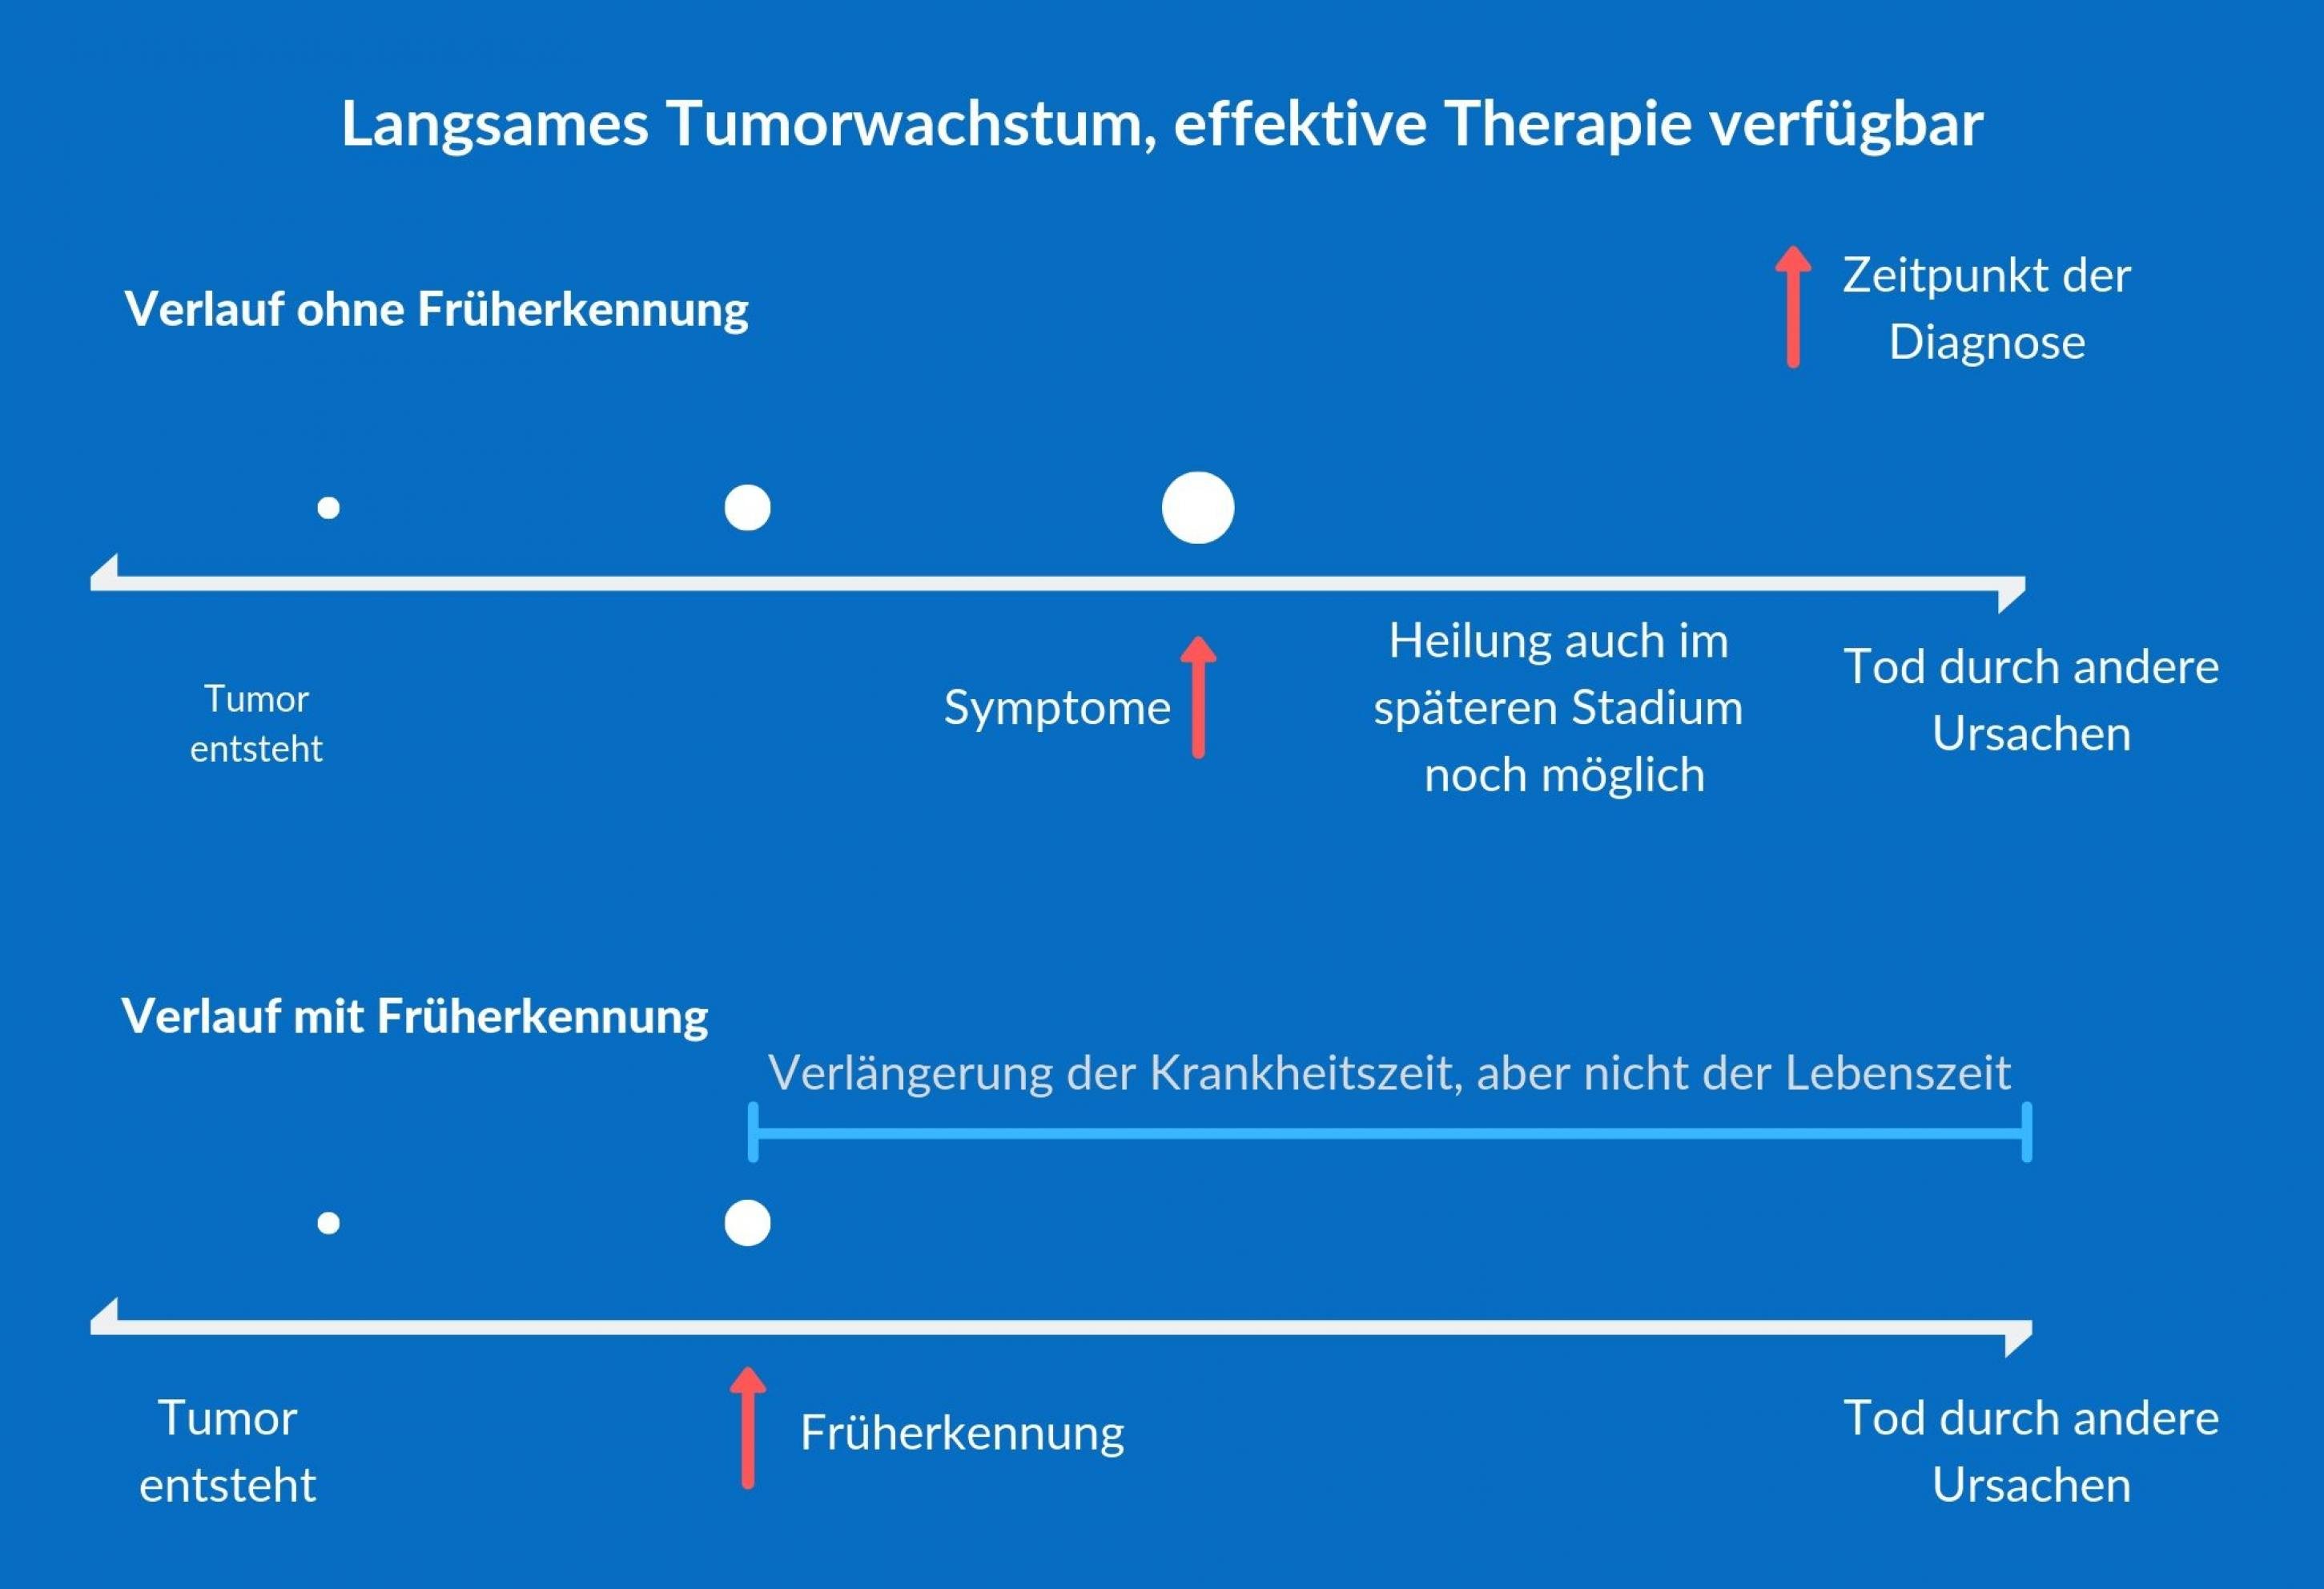 Die Grafik beschreibt ein mögliches Szenario bei der Krebsfrüherkennung: Die Früherkennung nützt manchmal nicht, wenn der Tumor nur langsam wächst und effektive Therapien verfügbar sind.